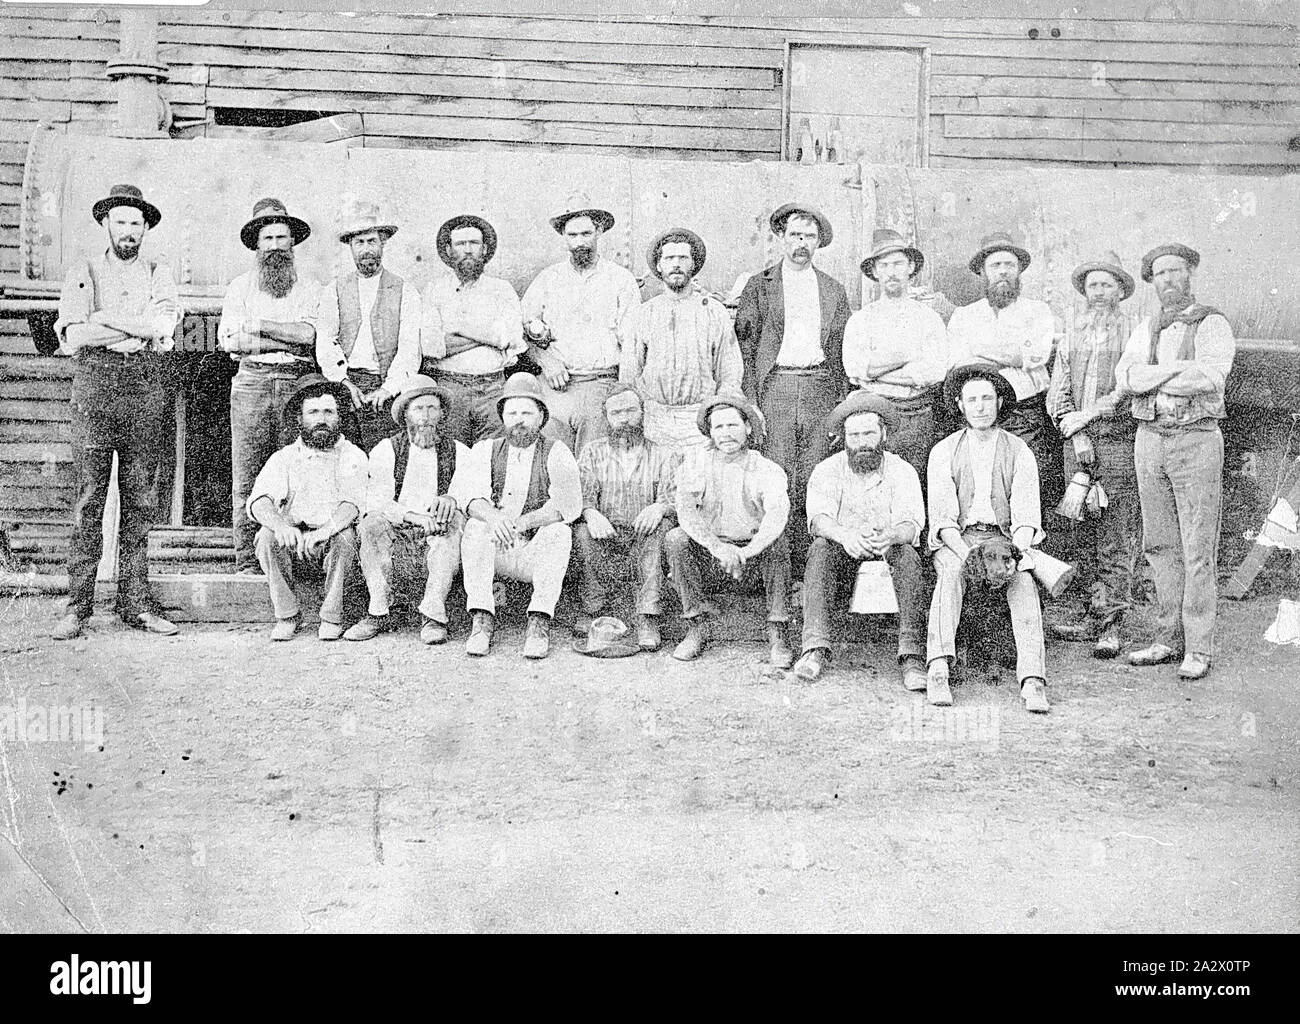 Négatif - Bendigo, Victoria, vers 1895, un groupe de mineurs de la mine de St Mungo. Ils sont debout en face de la chaudière vapeur. Un homme est titulaire d'un chien Banque D'Images